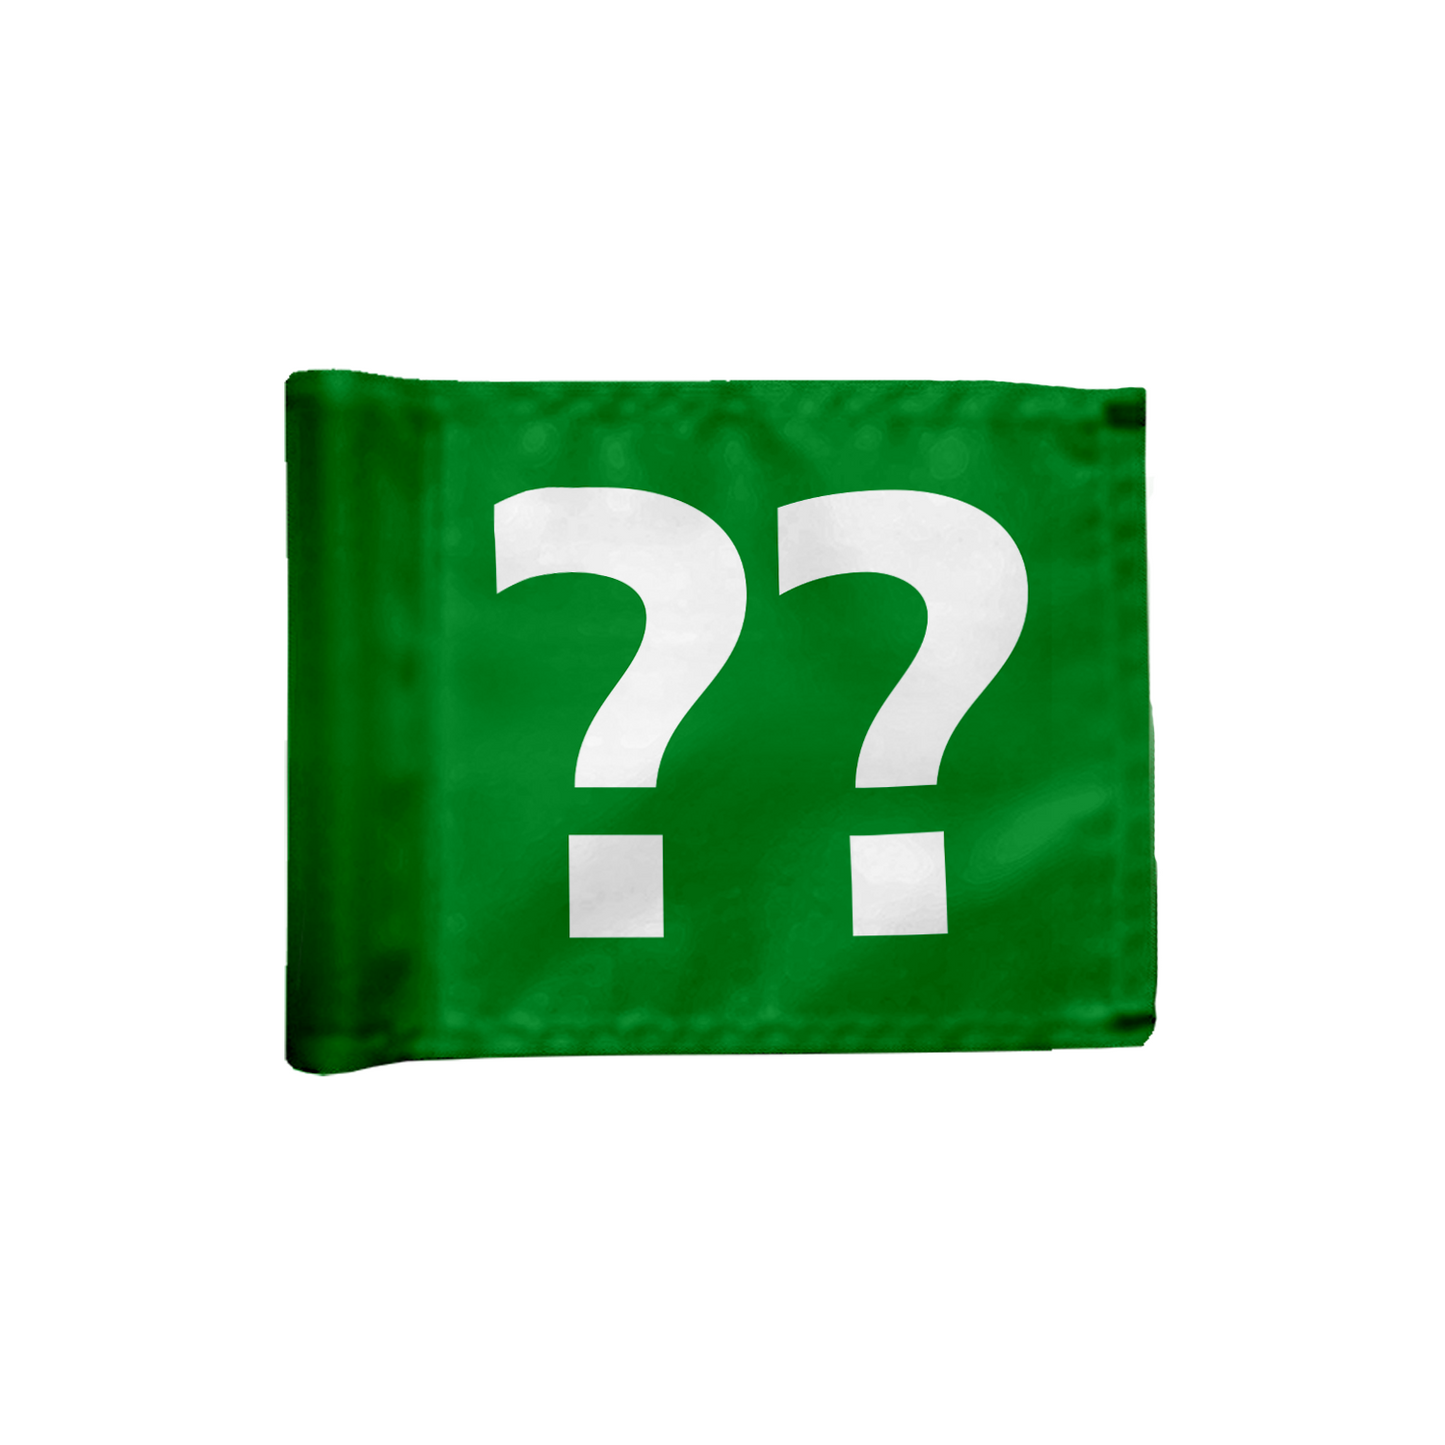 Styckvis puttinggreen flagga i grön med valfritt hålnumme, 200 gram flaggduk